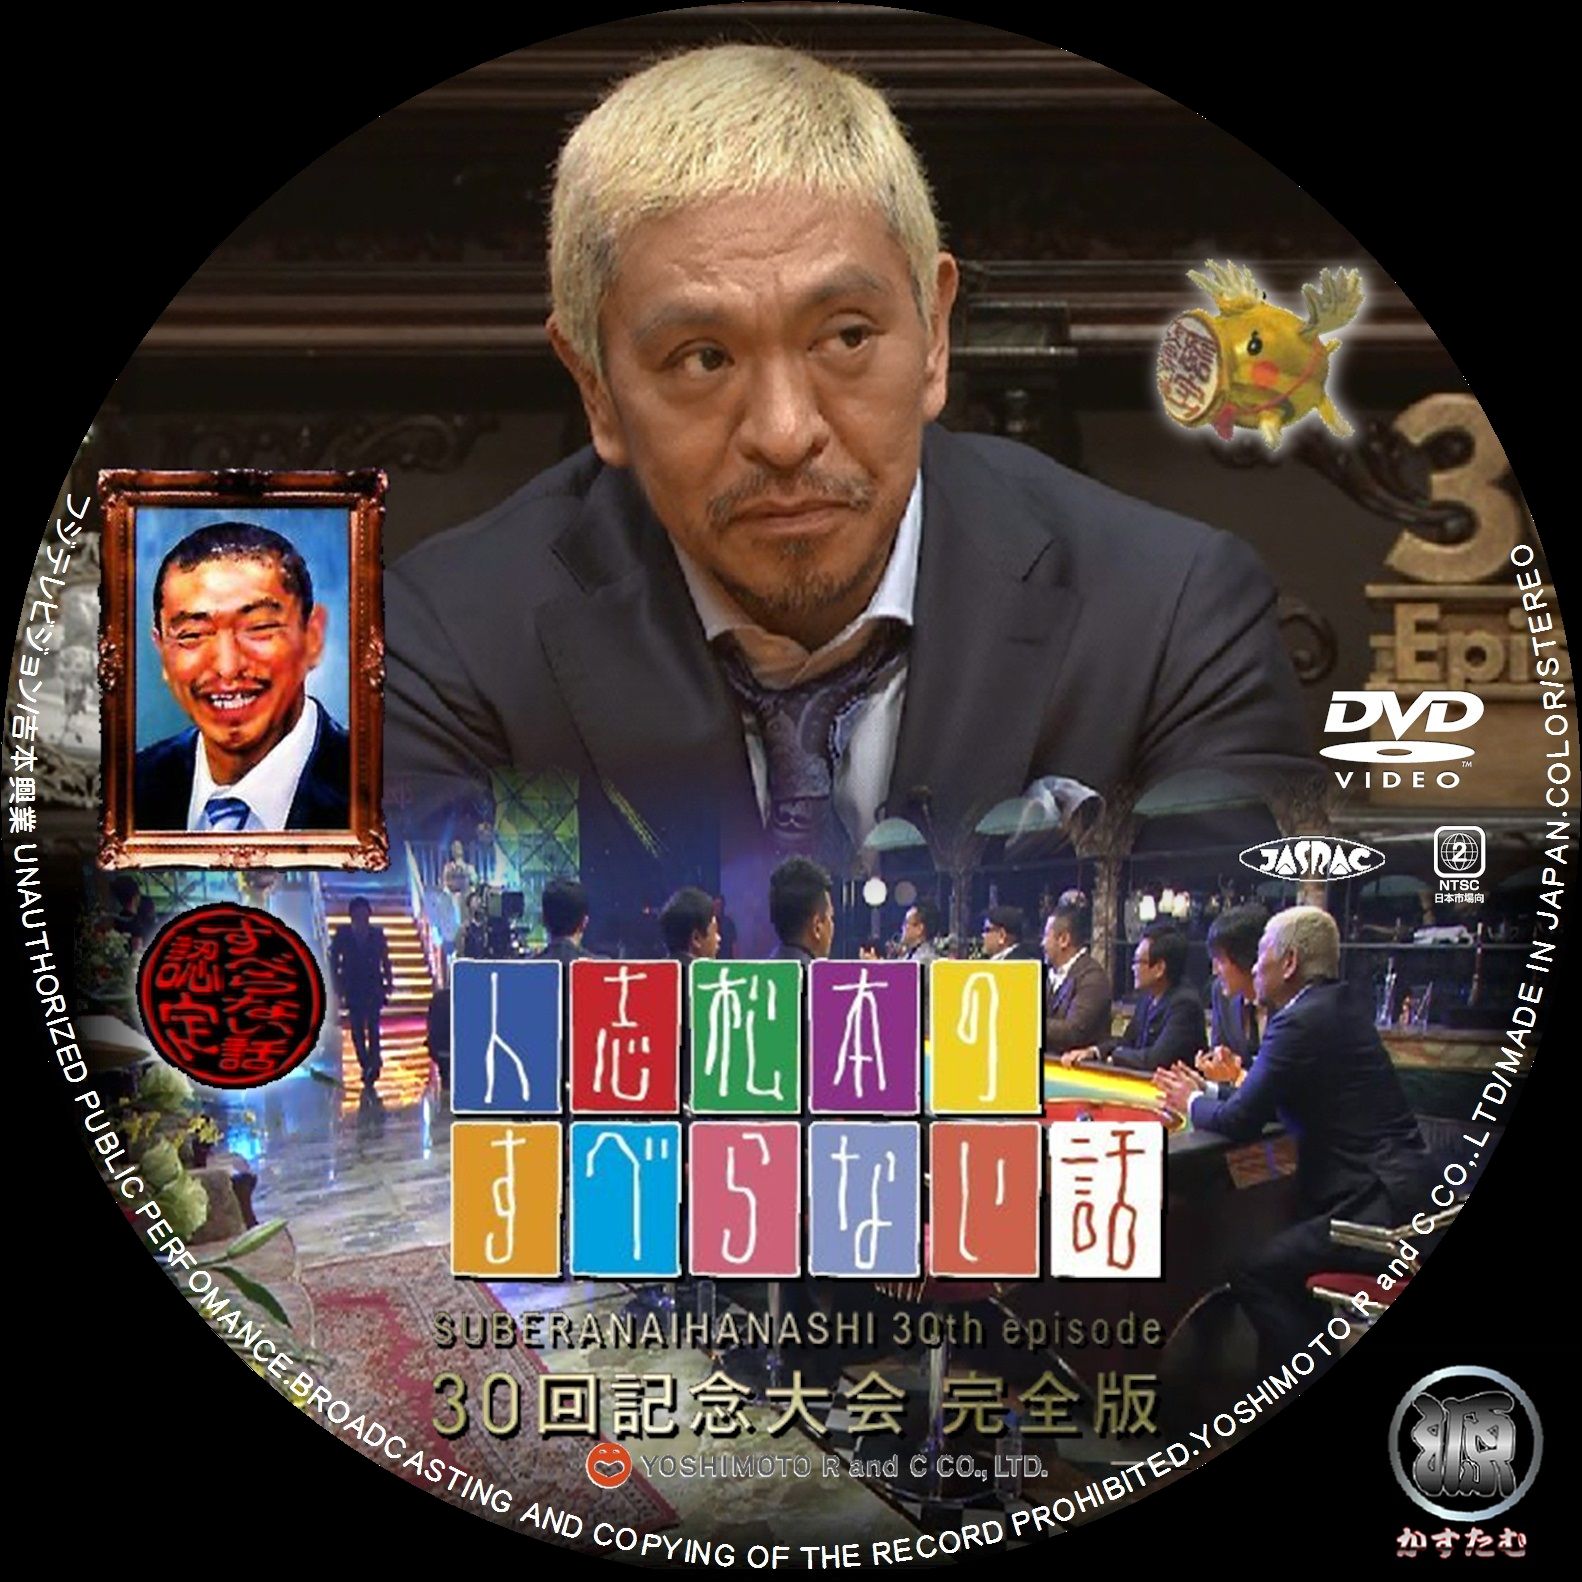 人志松本のすべらない話 - DVD/ブルーレイ